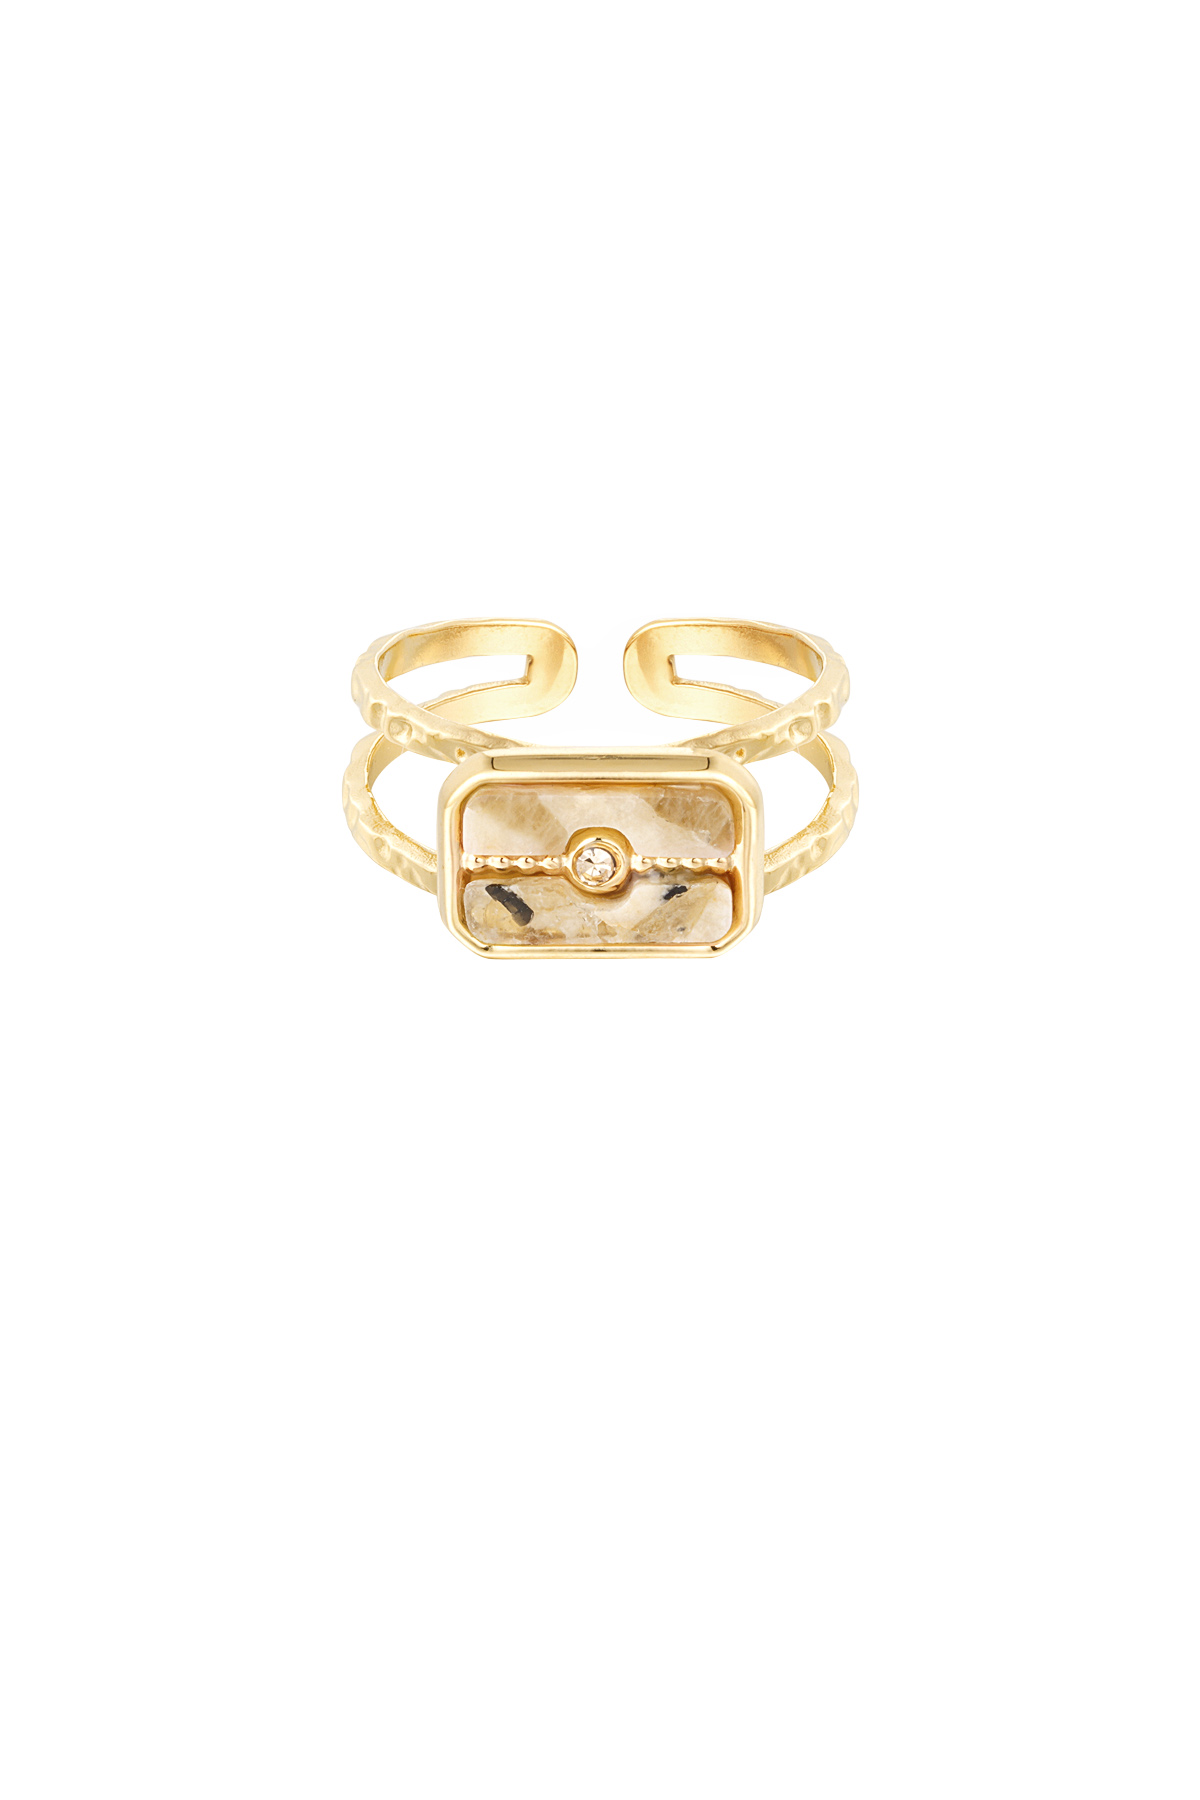 Ring versierde steen - goud/beige 